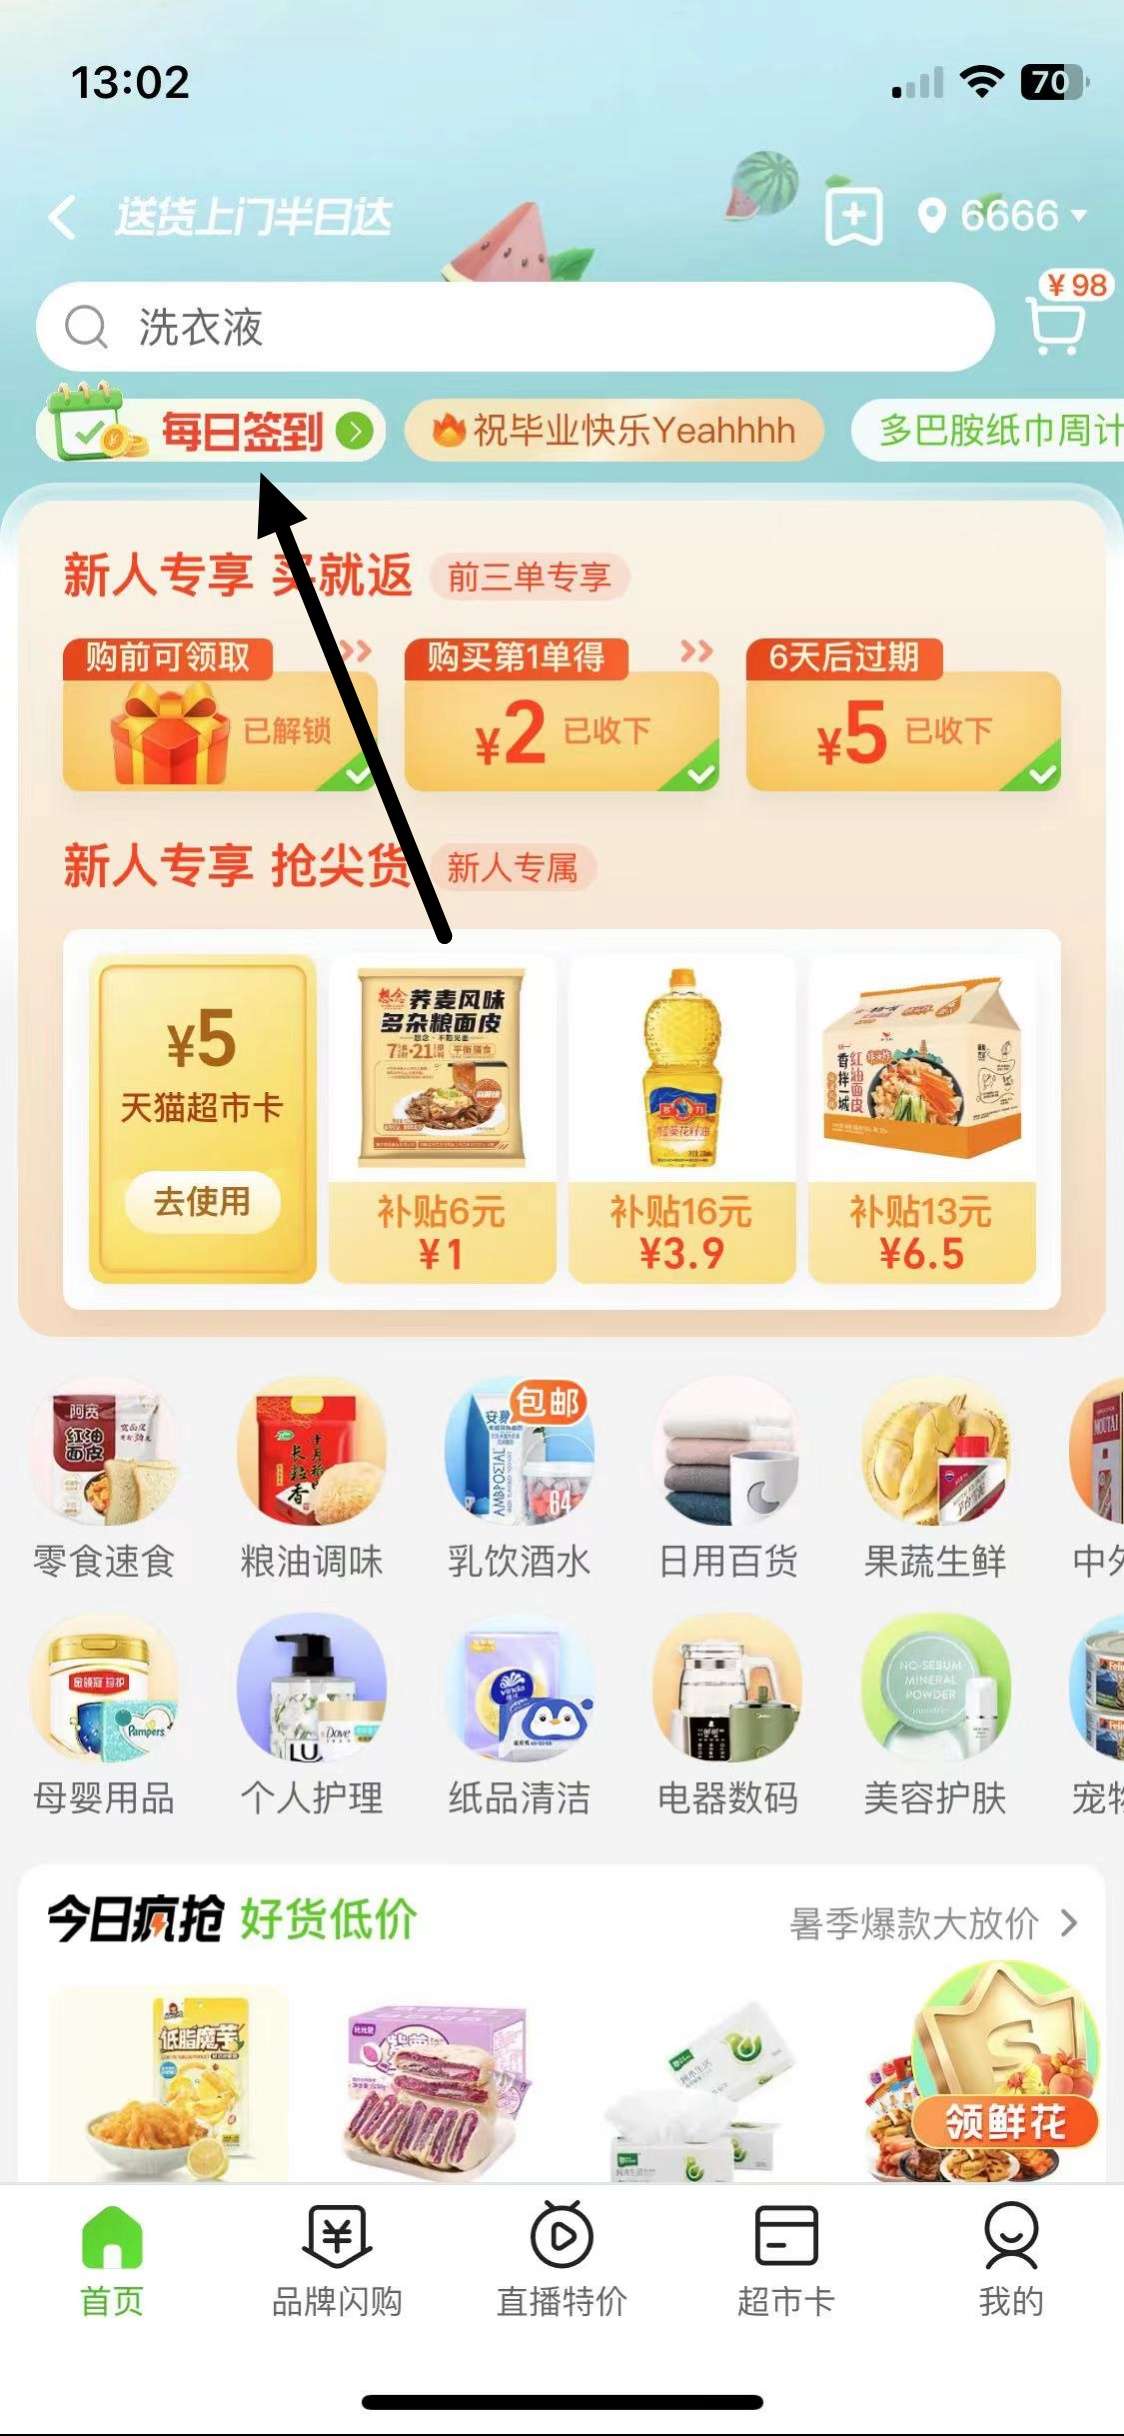 【虚拟物品】天猫超市1.8元猫超卡_福利线报